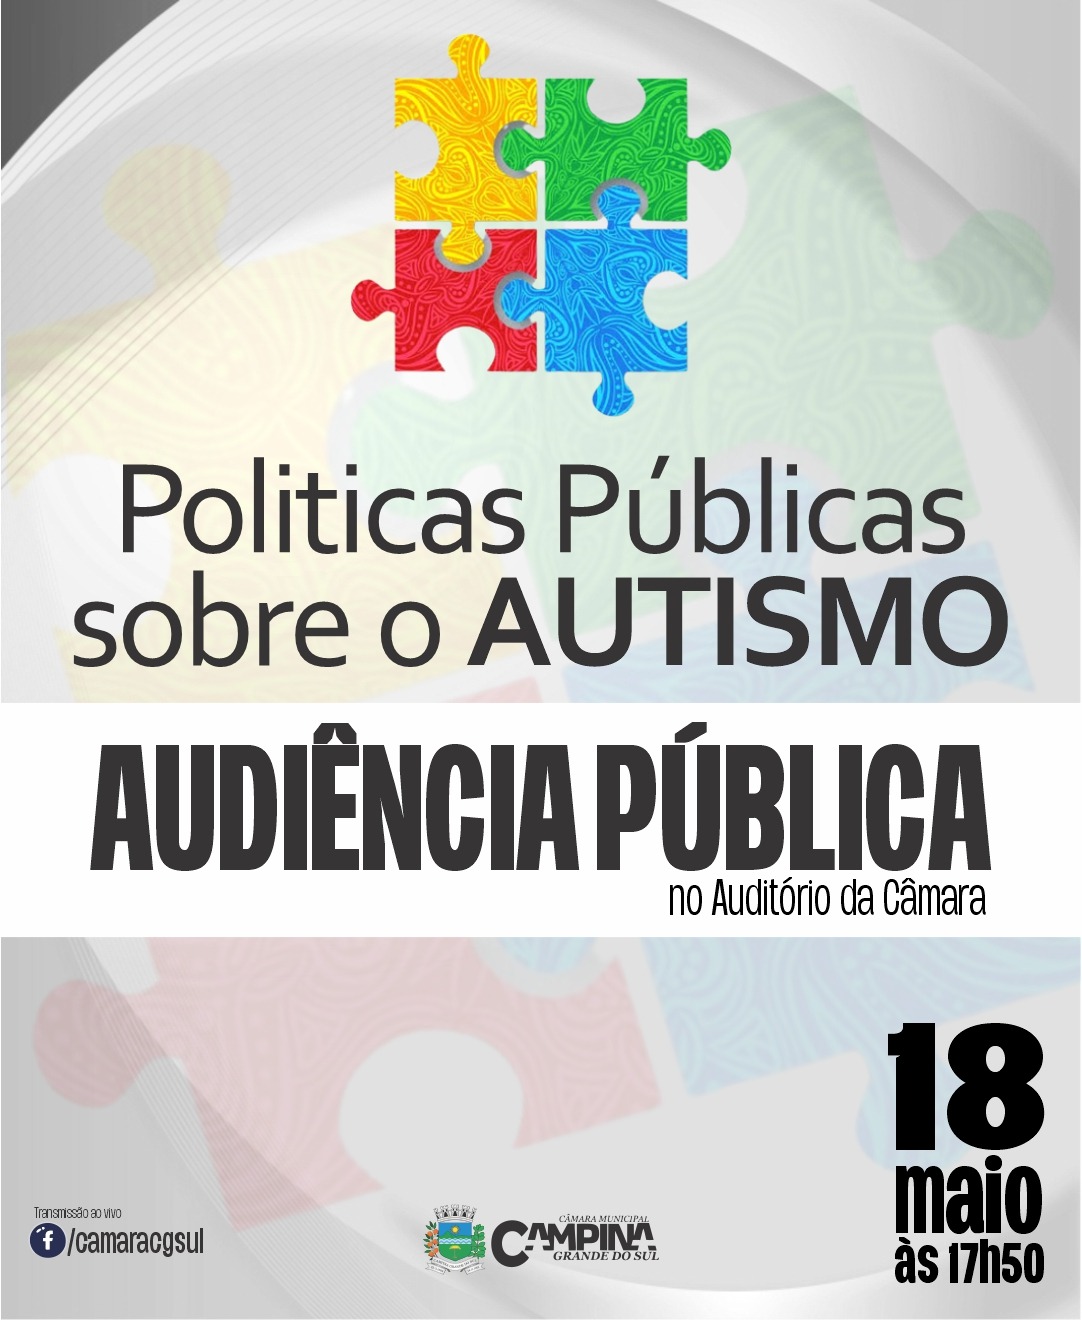 AUDIÊNCIA PÚBLICA: "Politicas Públicas sobre o Autismo"